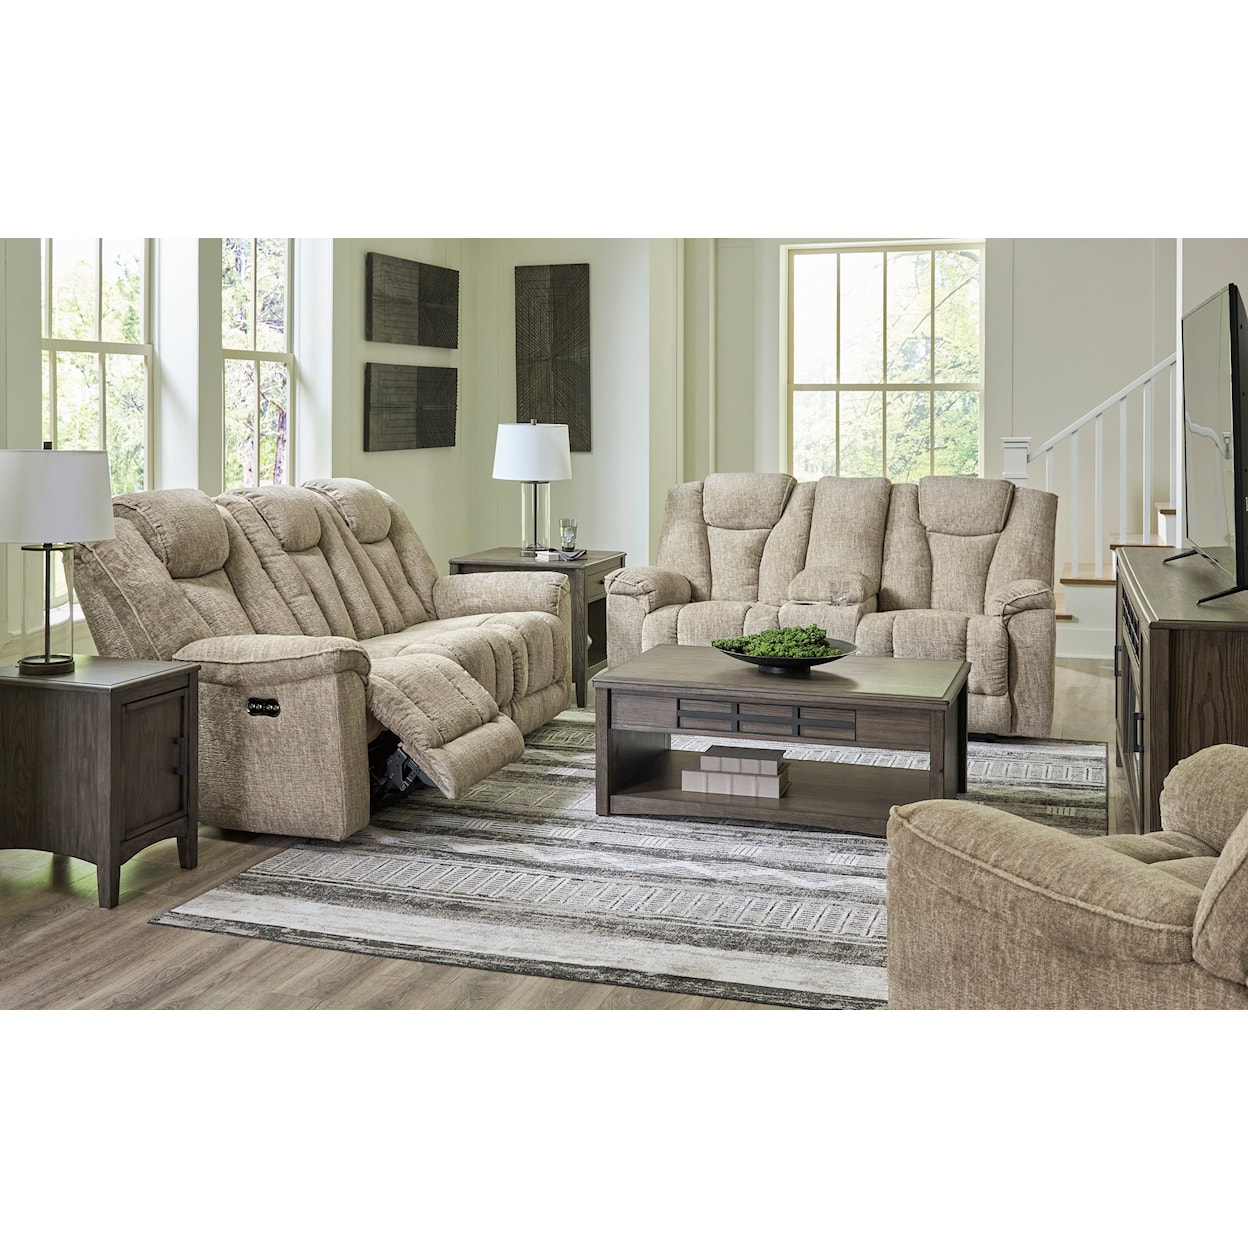 StyleLine Hindmarsh Living Room Set